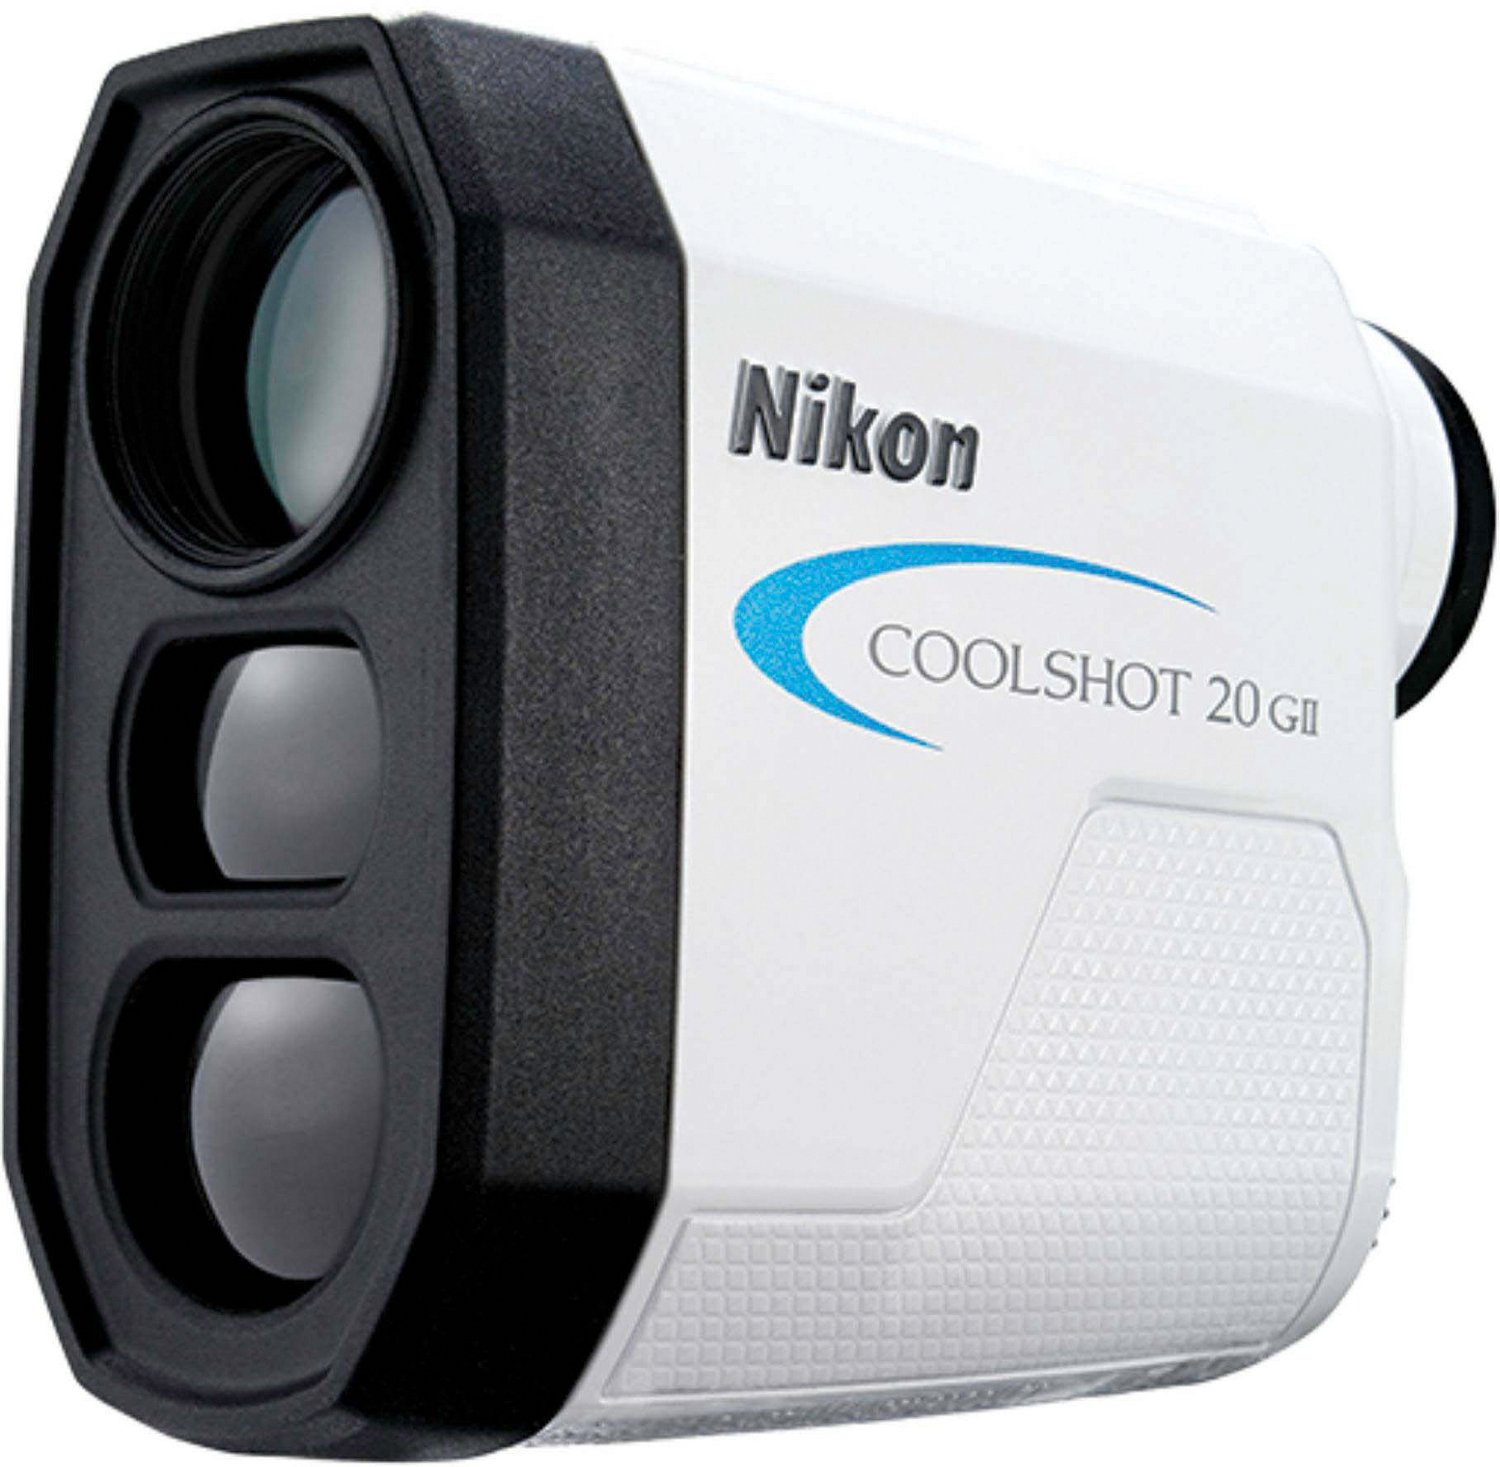 Coolshot 20 GII Laser Rangefinder | Academy